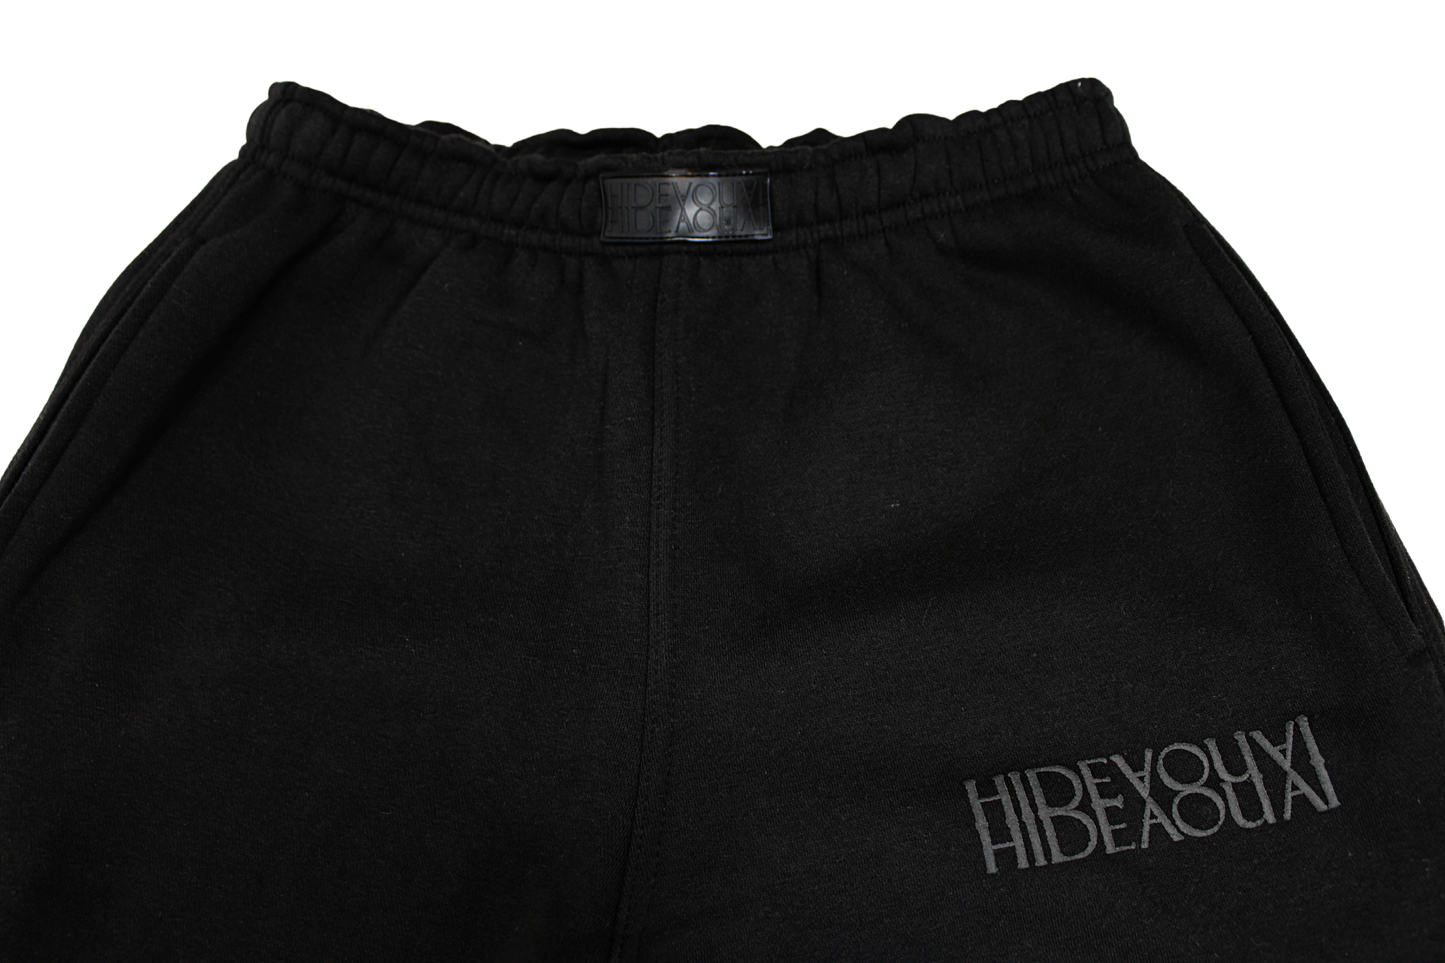 Signature Sweatpants – Hideaouai